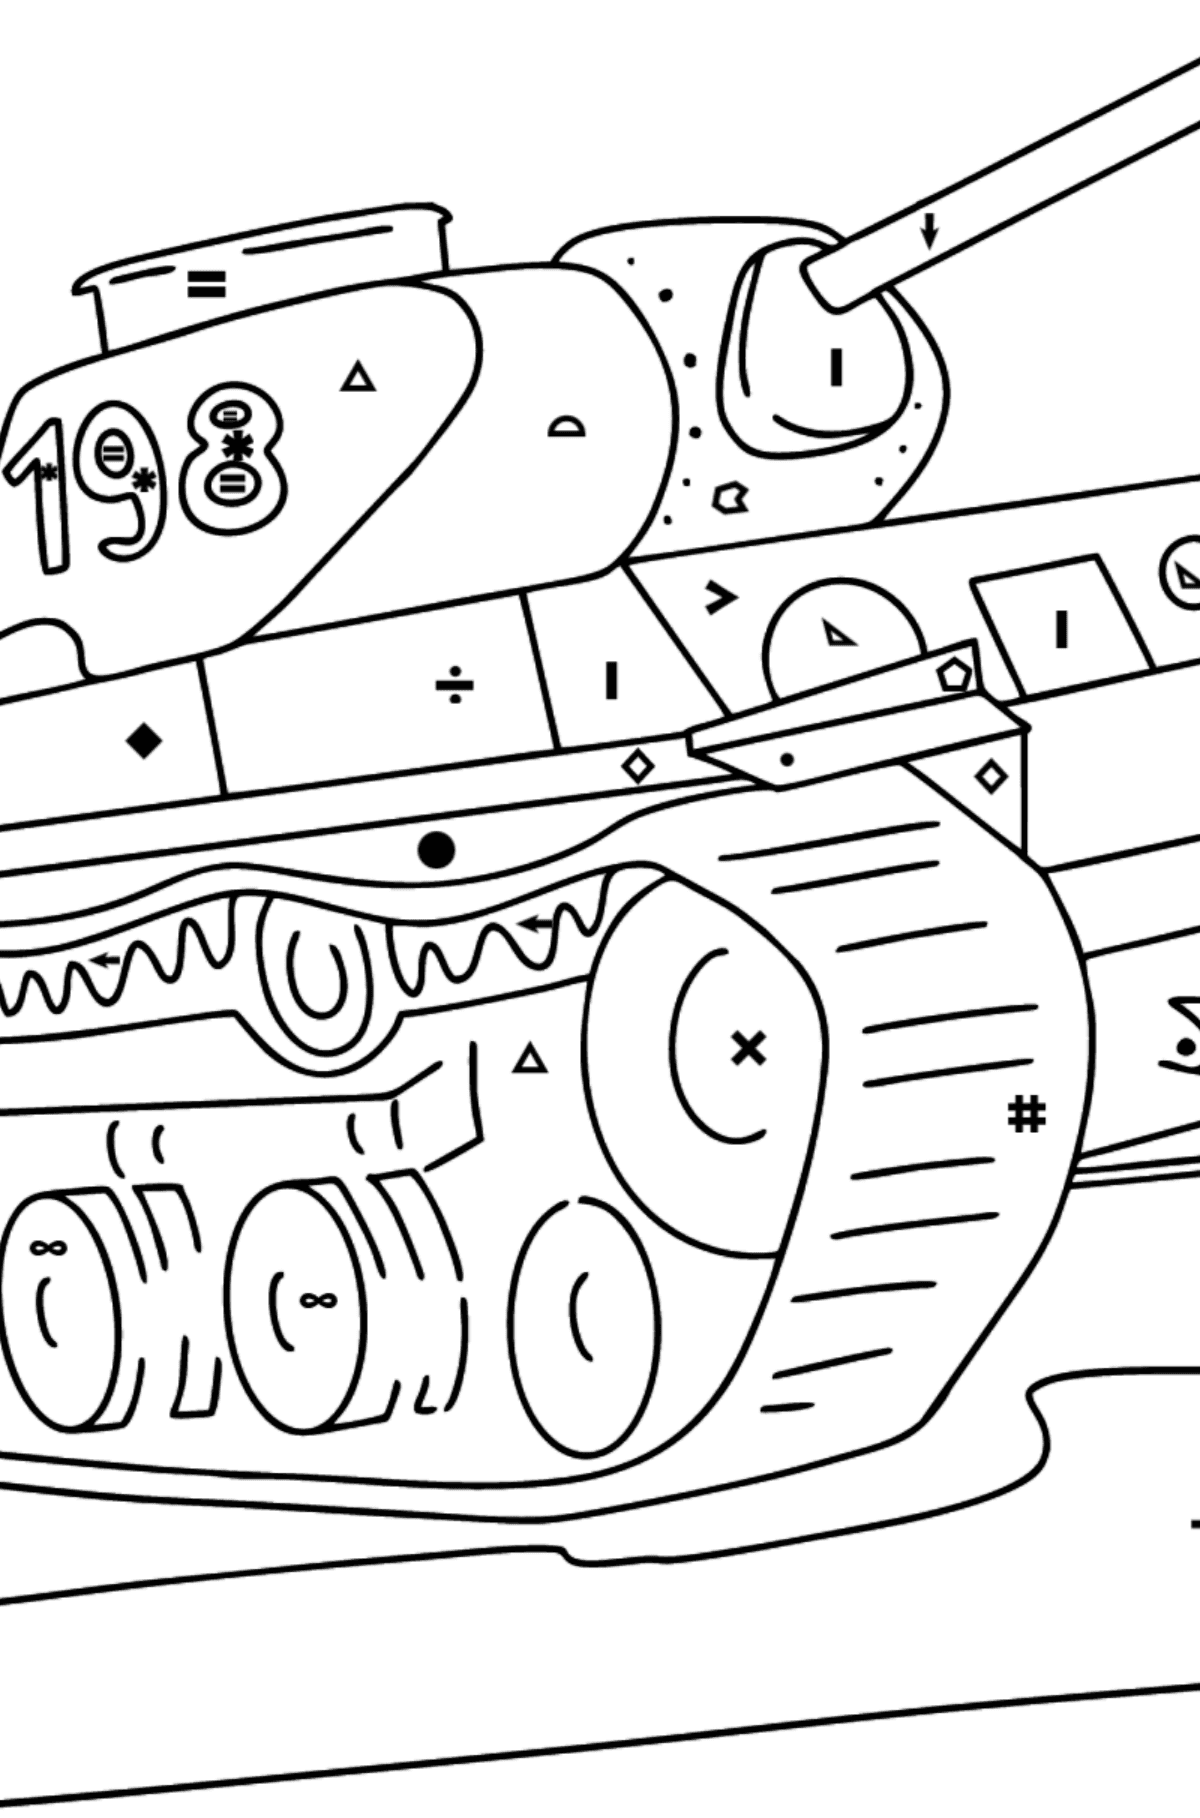 Desenho para colorir de tanque KV 1 - Colorir por Símbolos para Crianças